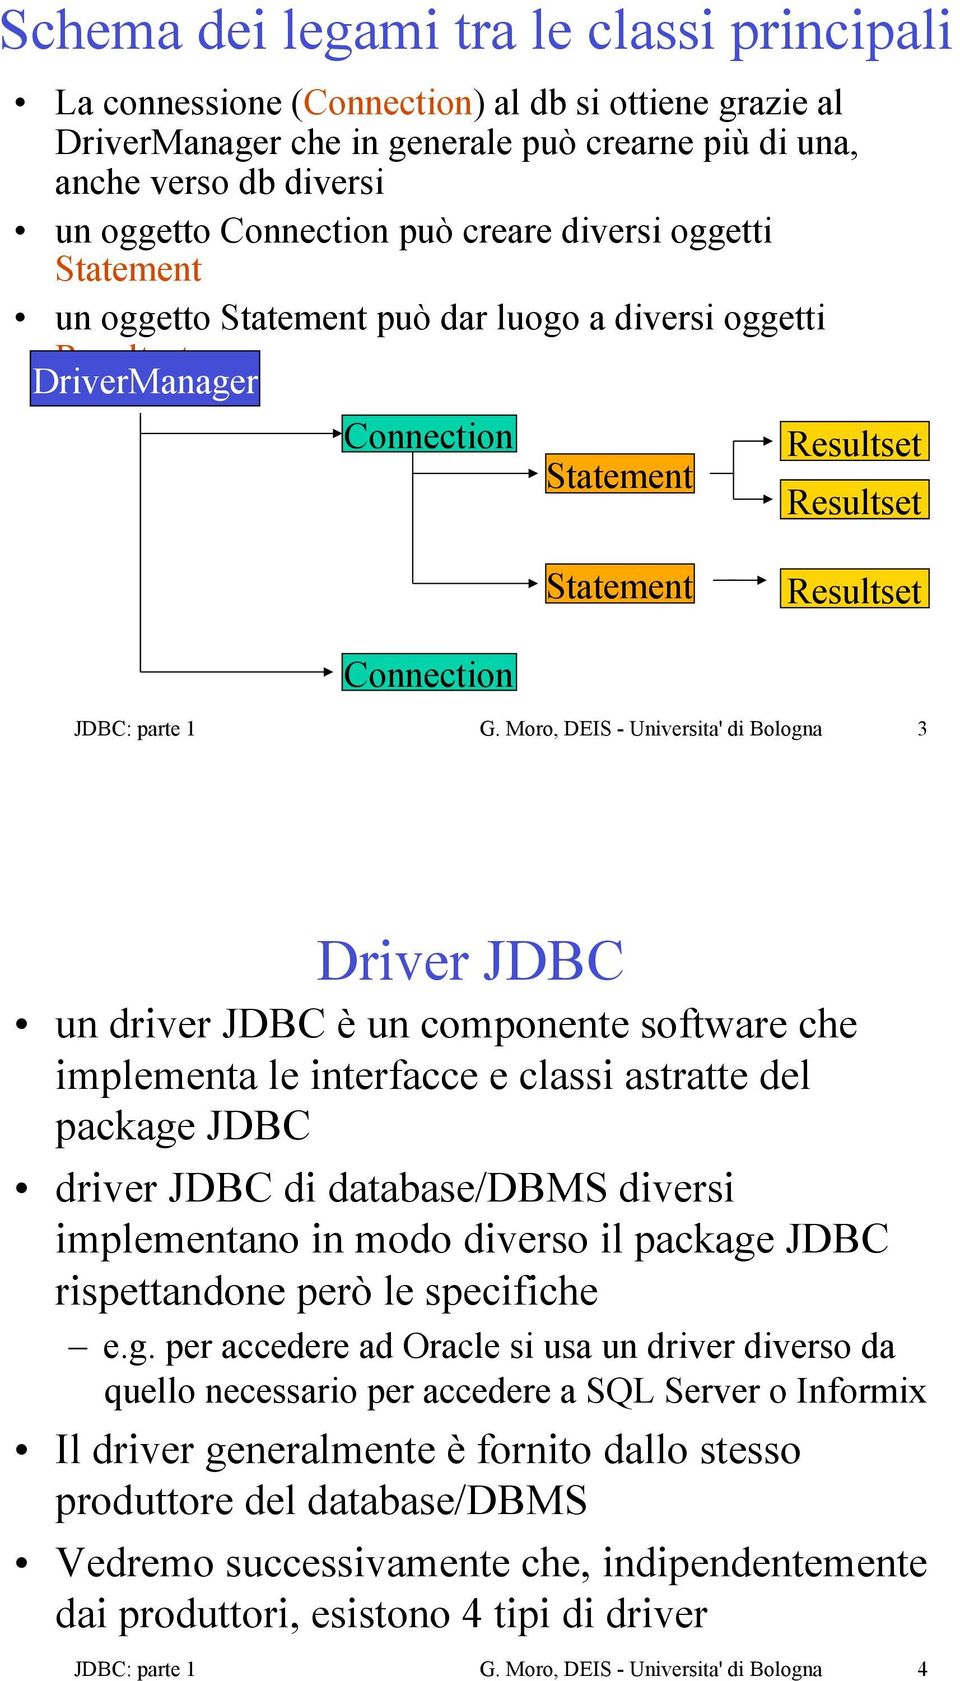 G. Moro, DEIS - Universita' di Bologna 3 Driver JDBC un driver JDBC è un componente software che implementa le interfacce e classi astratte del package JDBC driver JDBC di database/dbms diversi